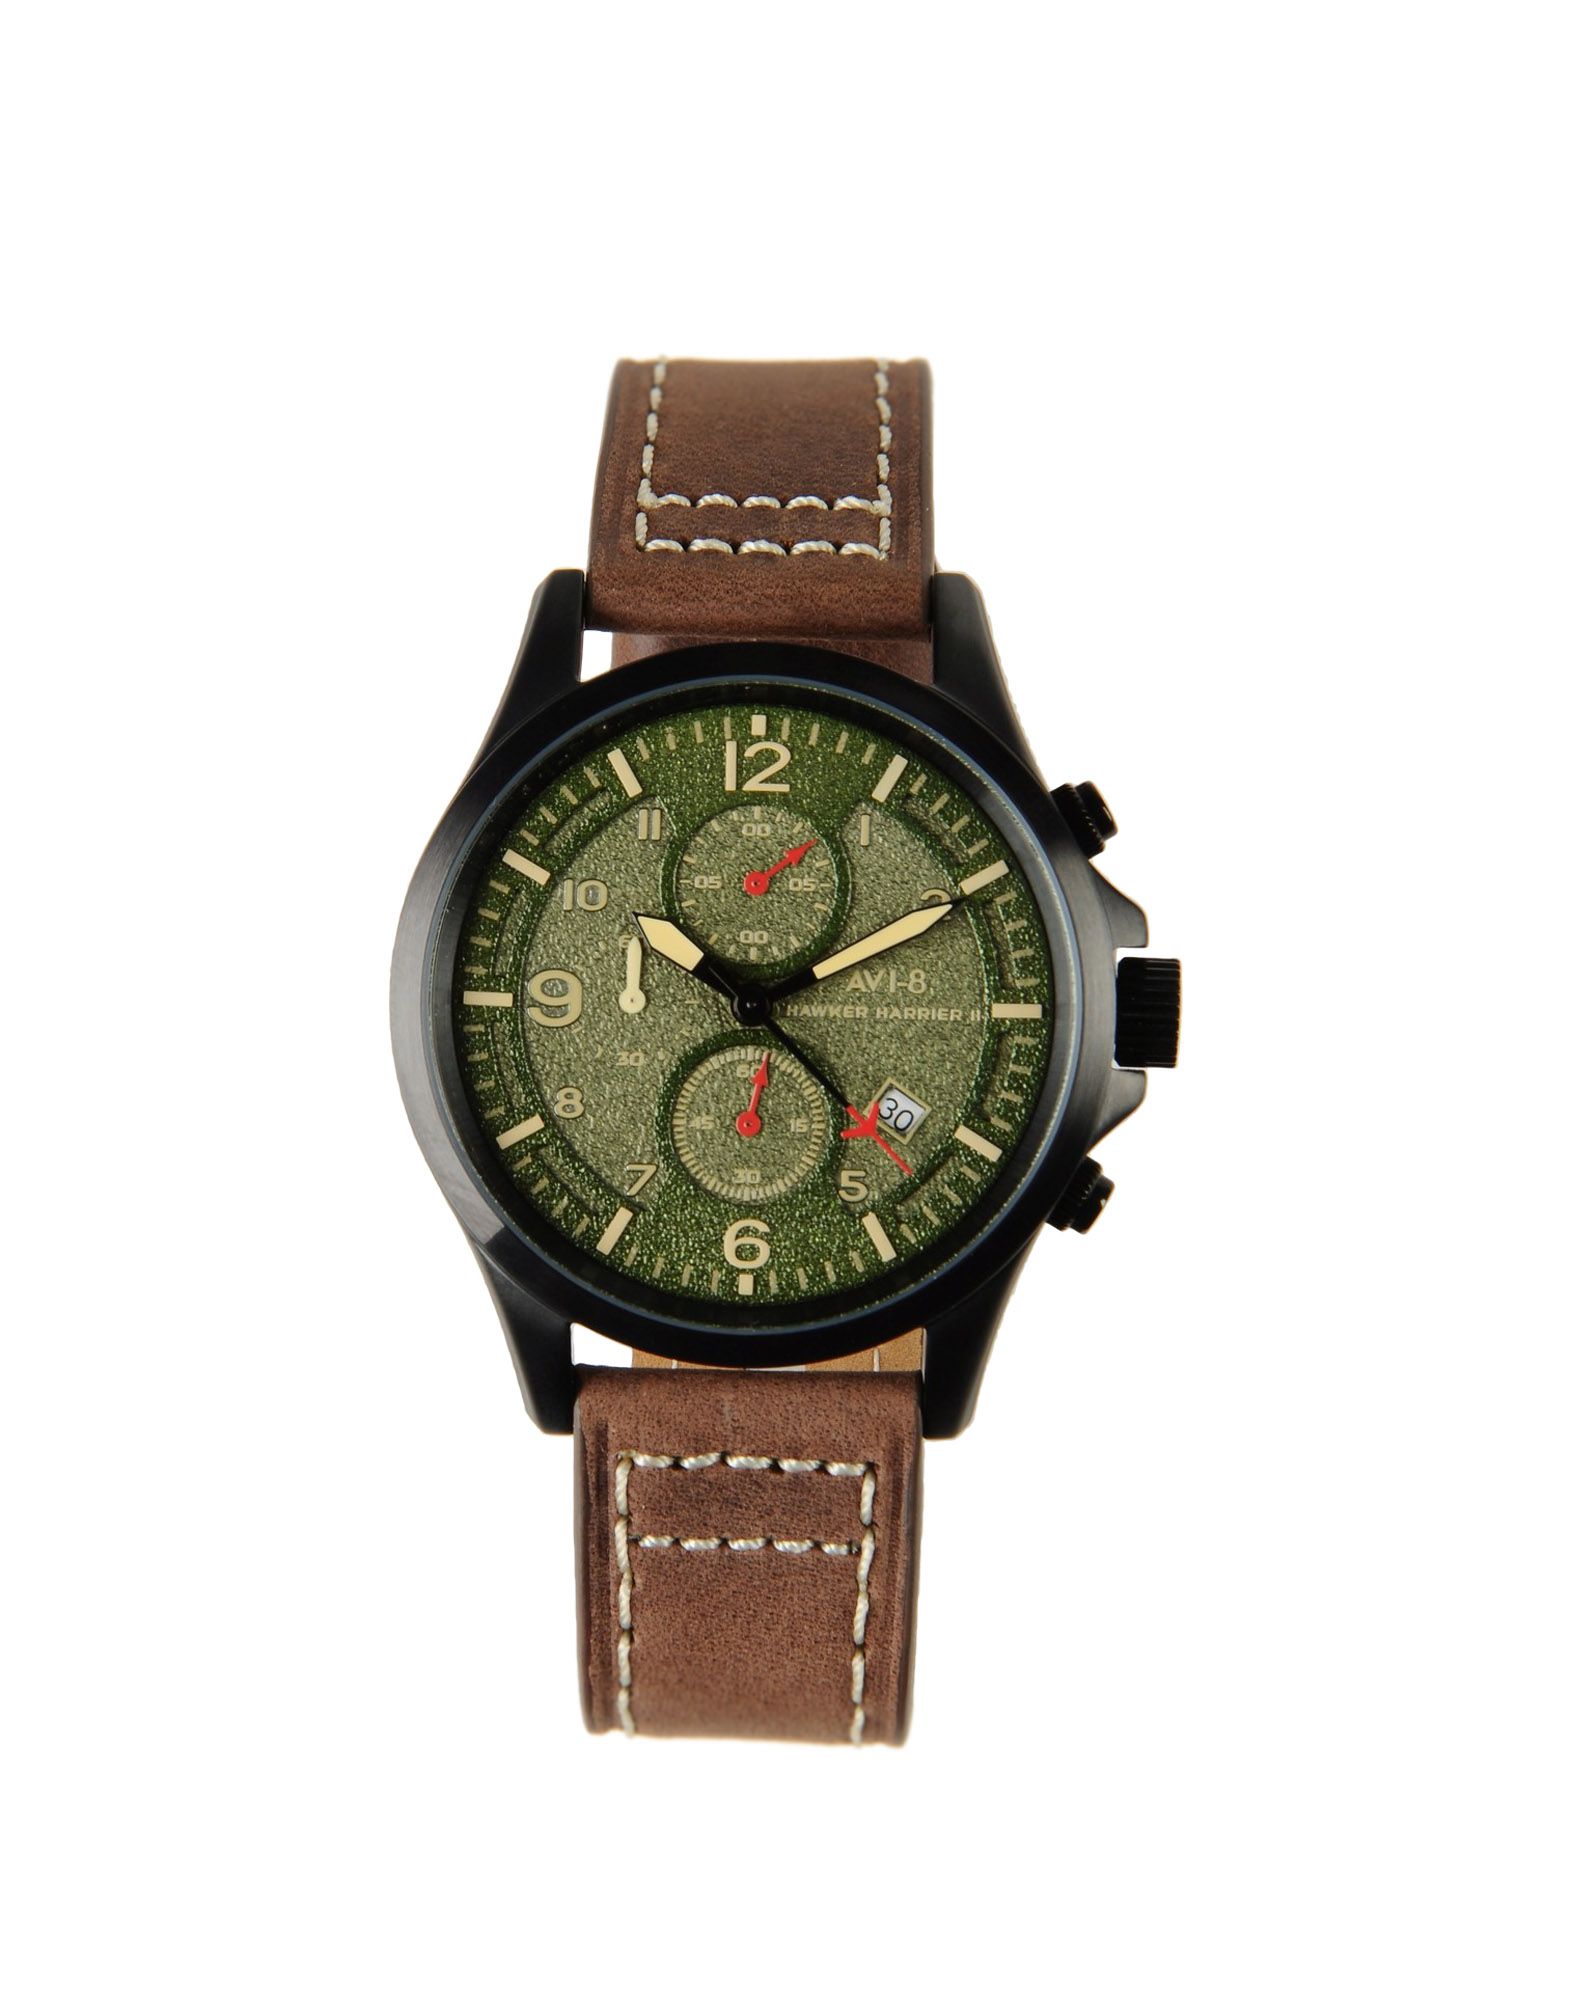 Foto Avi-8 Relojes De Pulsera Hombre Verde militar